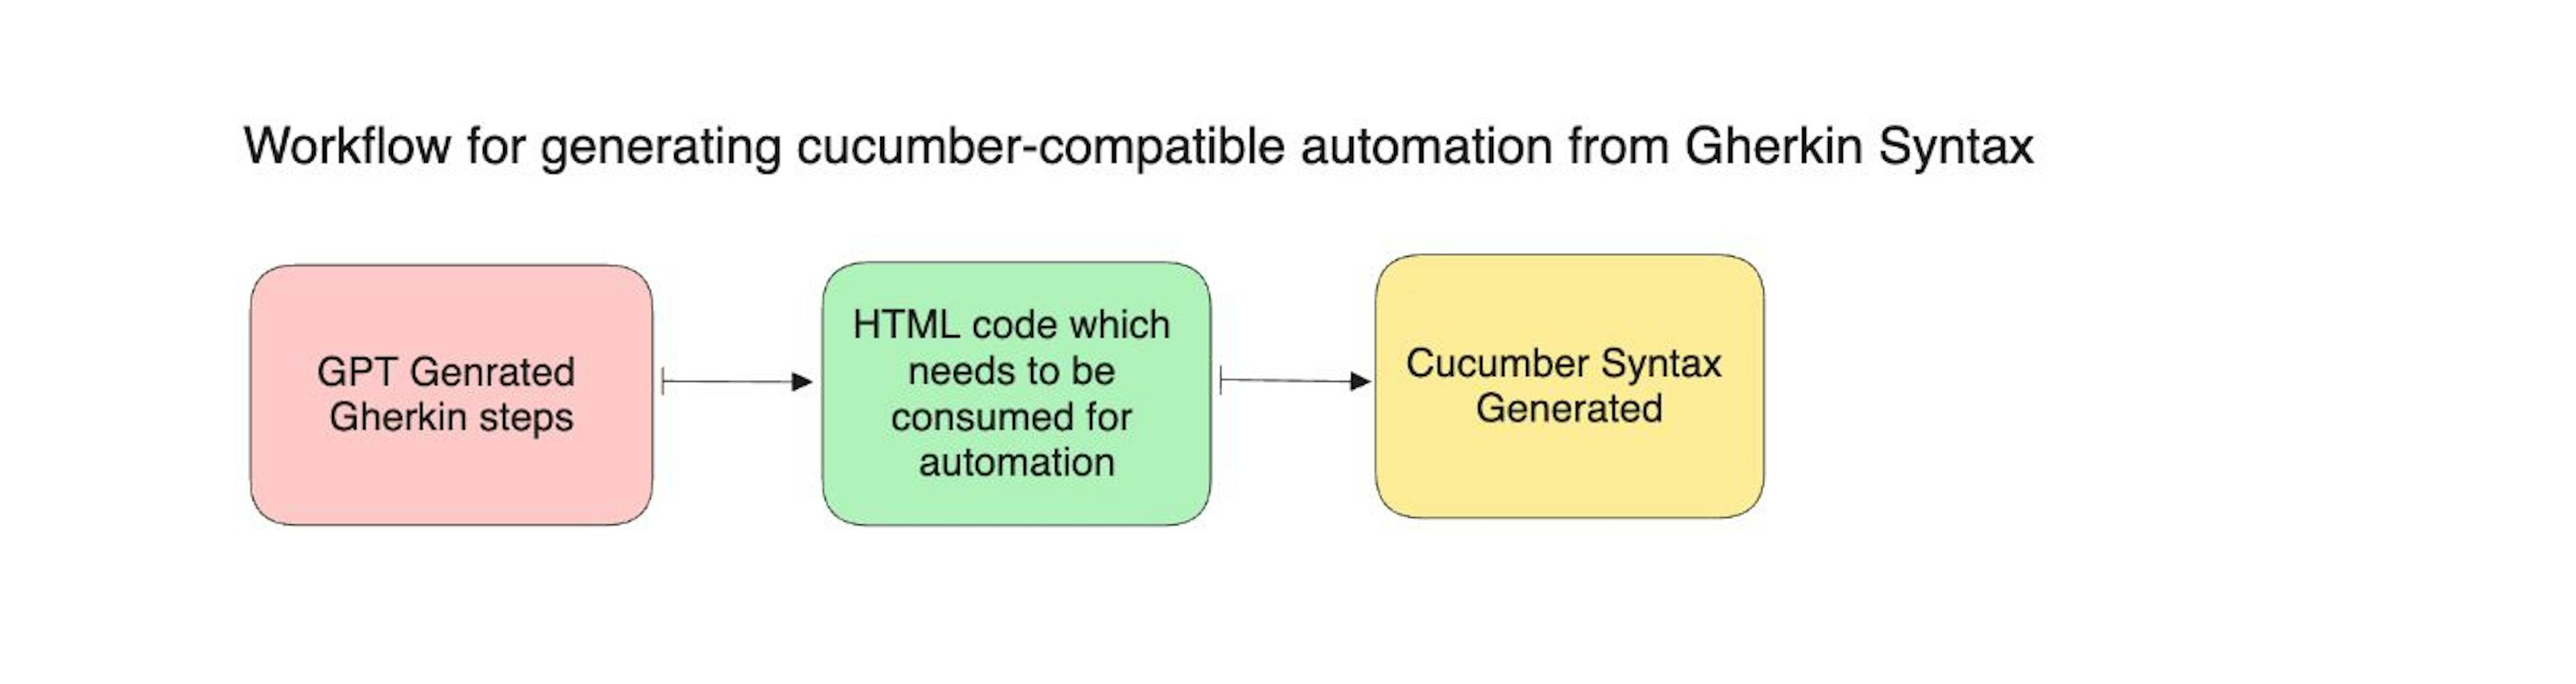 Gerando código compatível com Cucumber com etapas Gherkin usando GPT